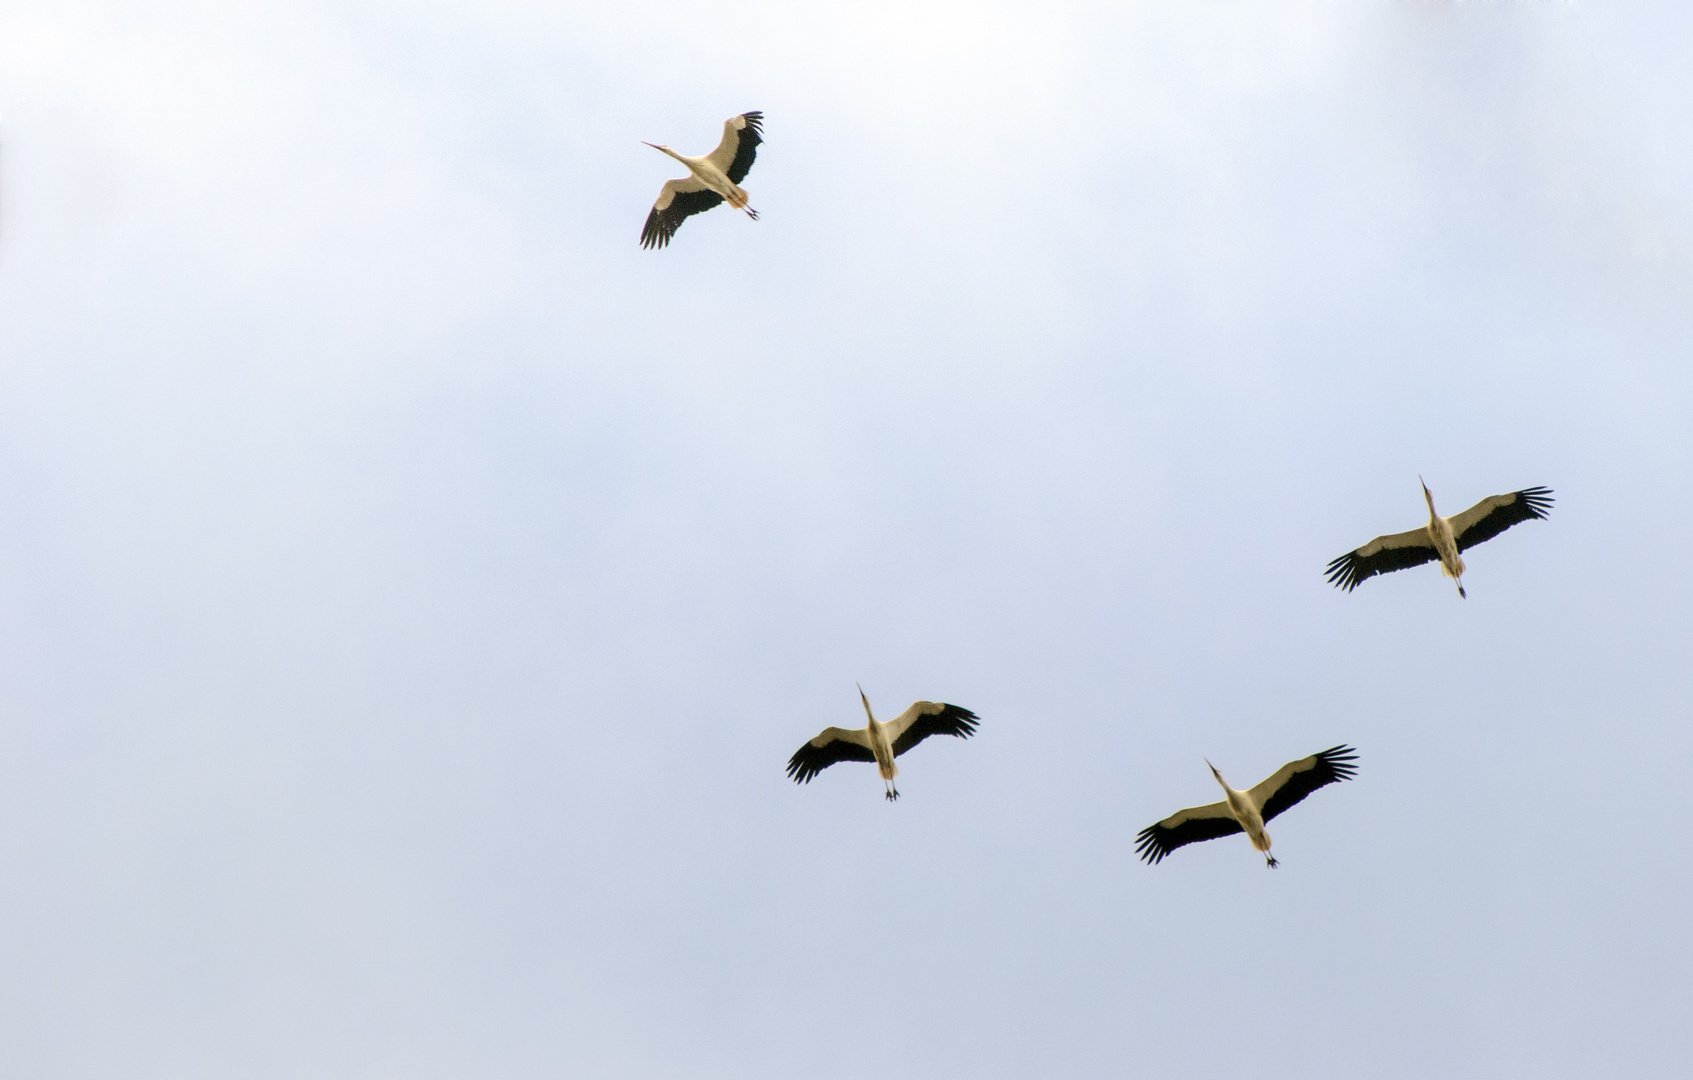 Storks migrating